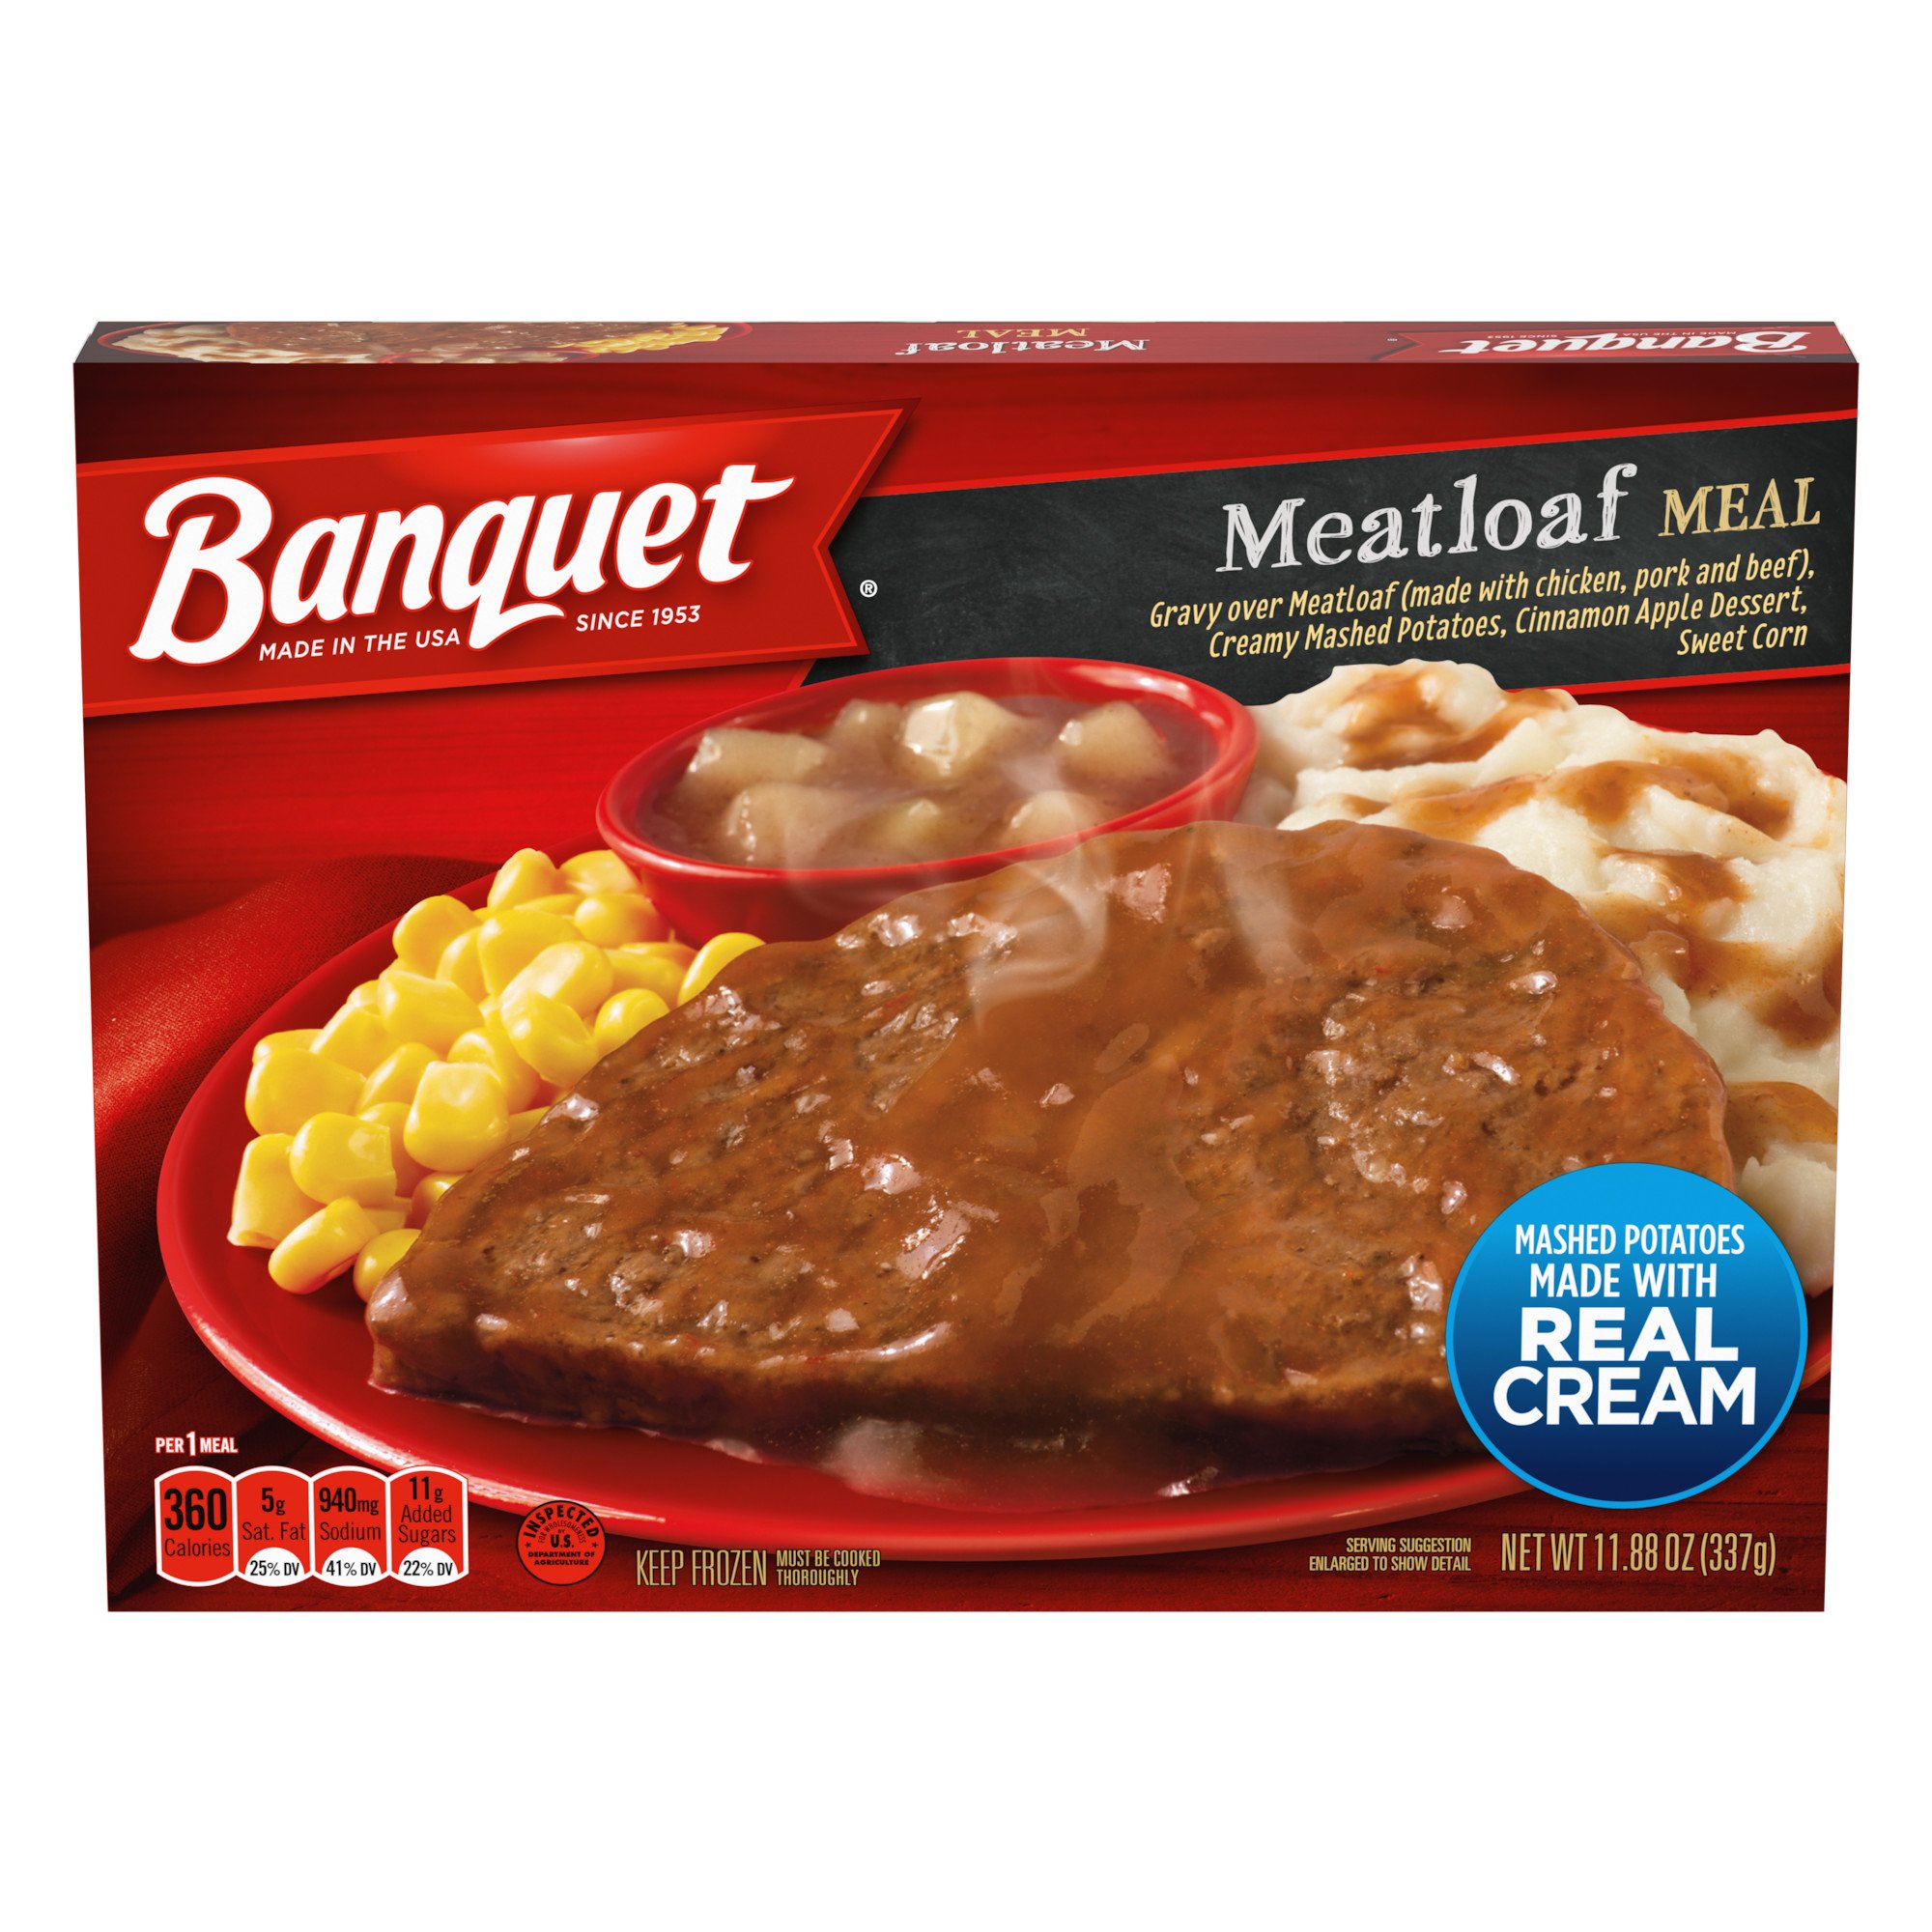 Banquet Meatloaf Meal - Shop Entrees & Sides at H-E-B